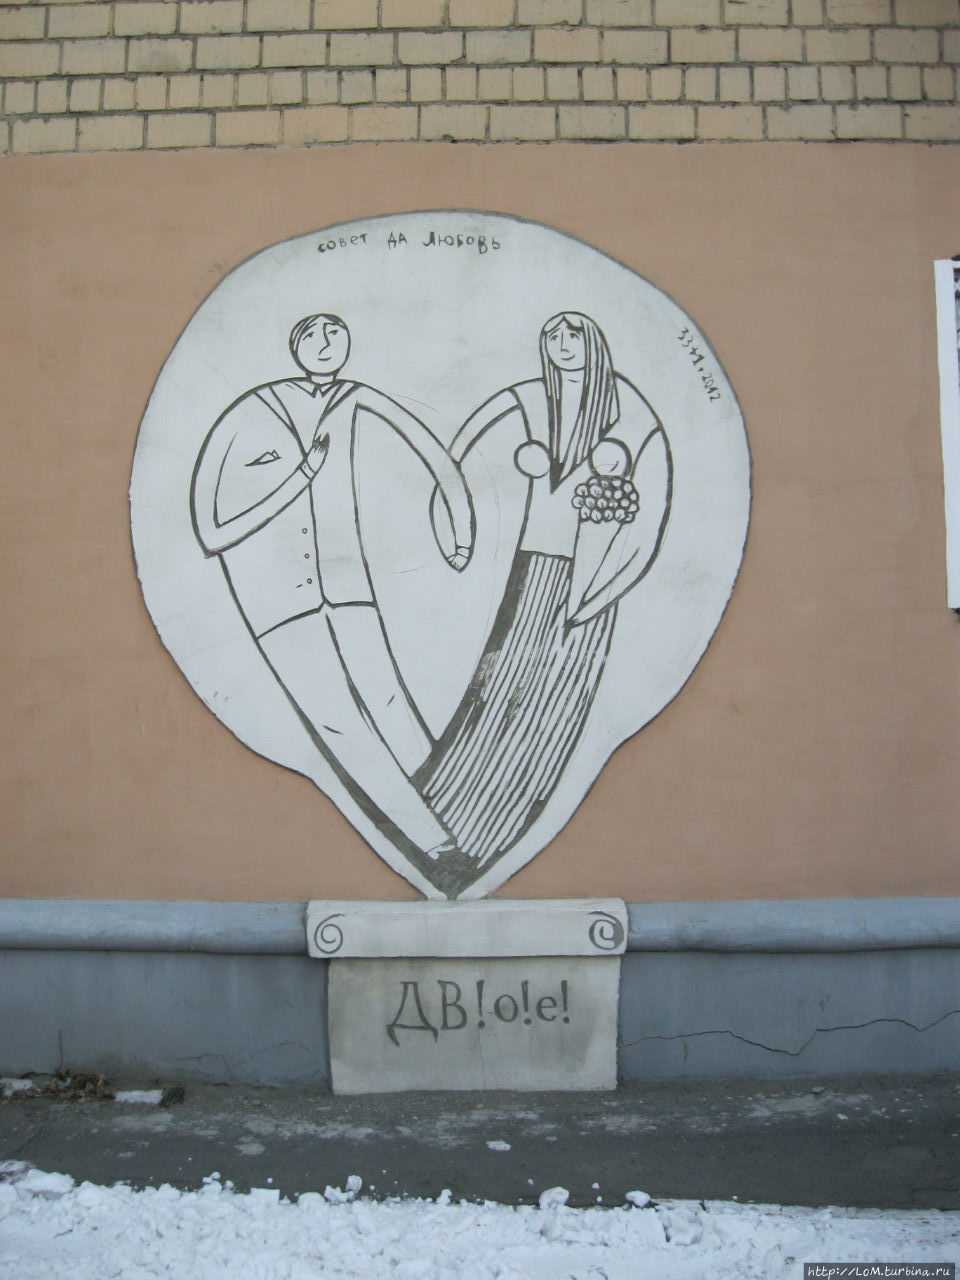 Уличное творчество сообщества художников Владивостока Владивосток, Россия